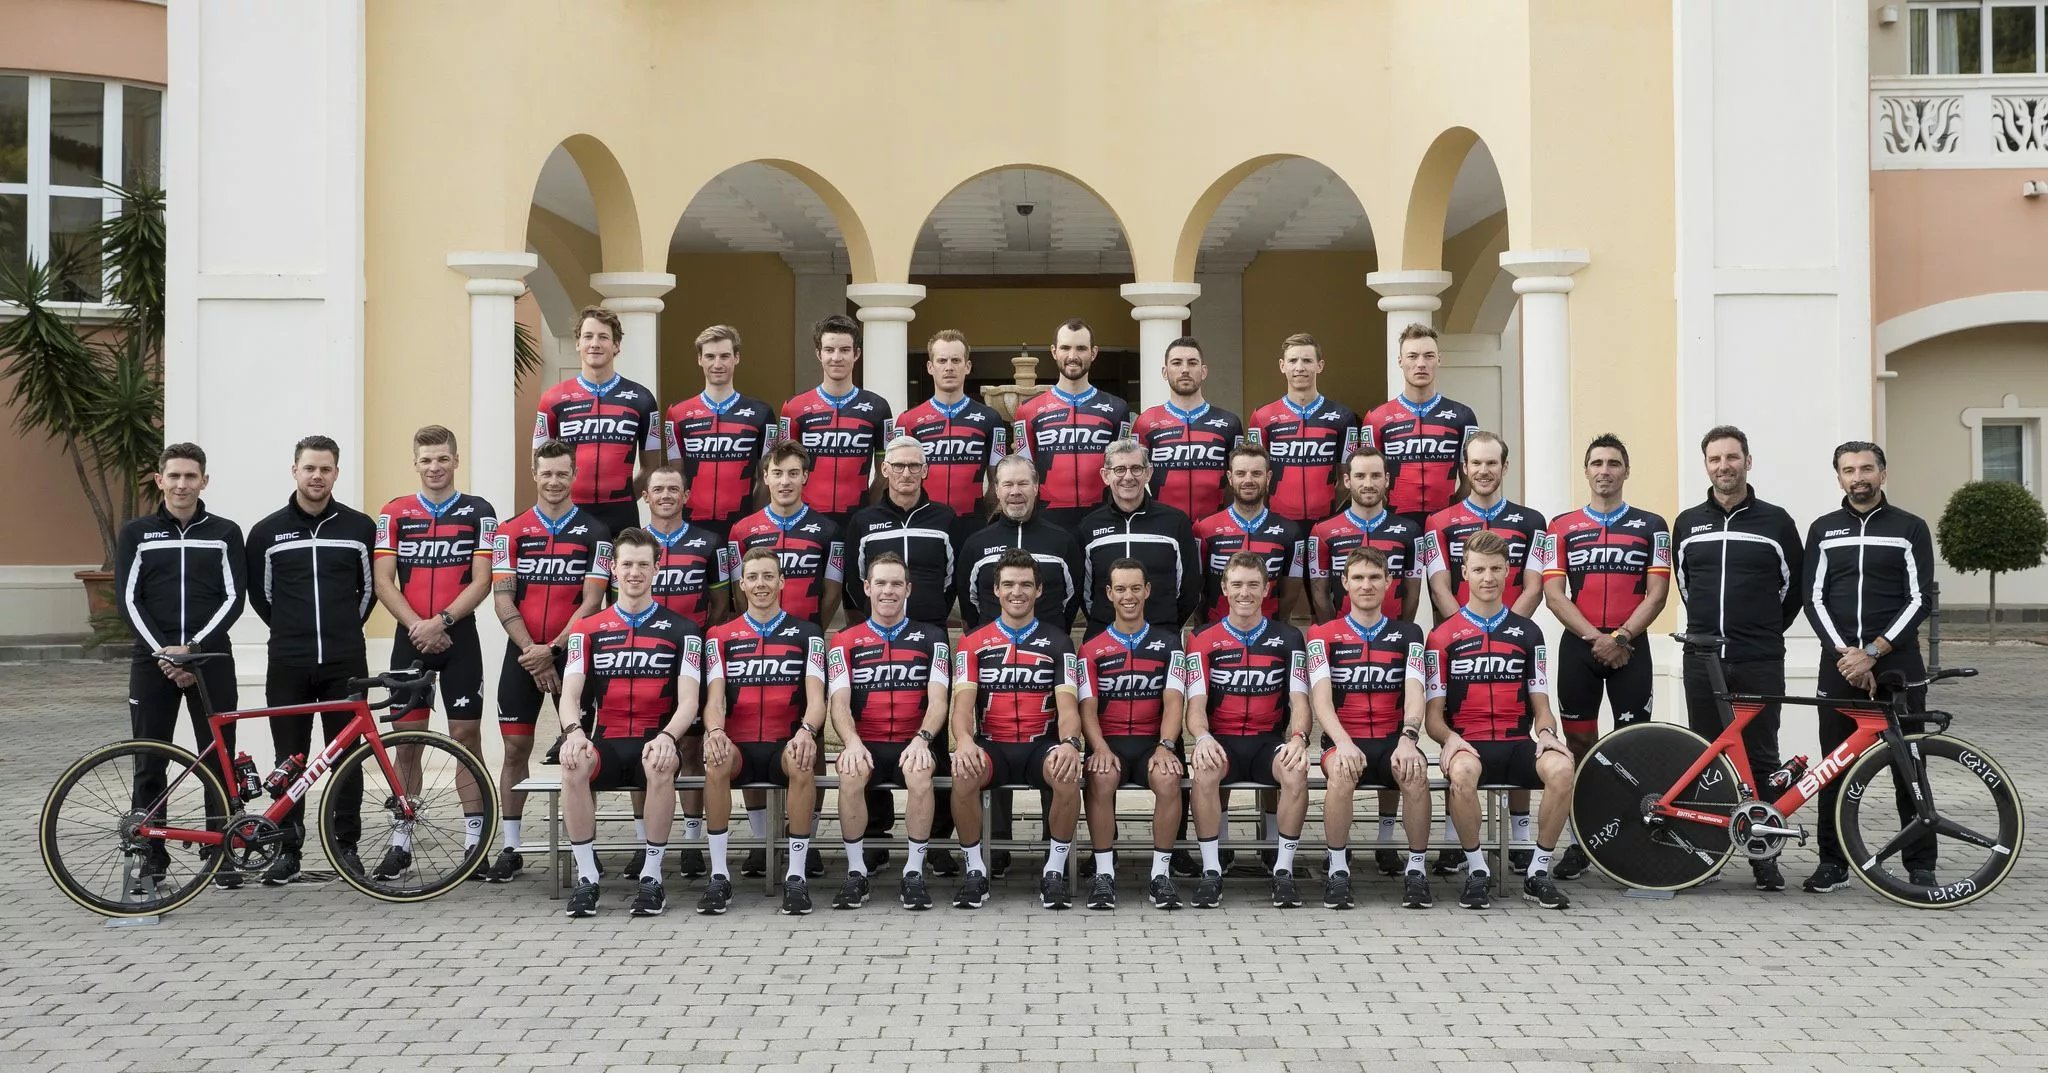 Решена судьба велокоманды BMC Racing Team и Грега ван Авермата